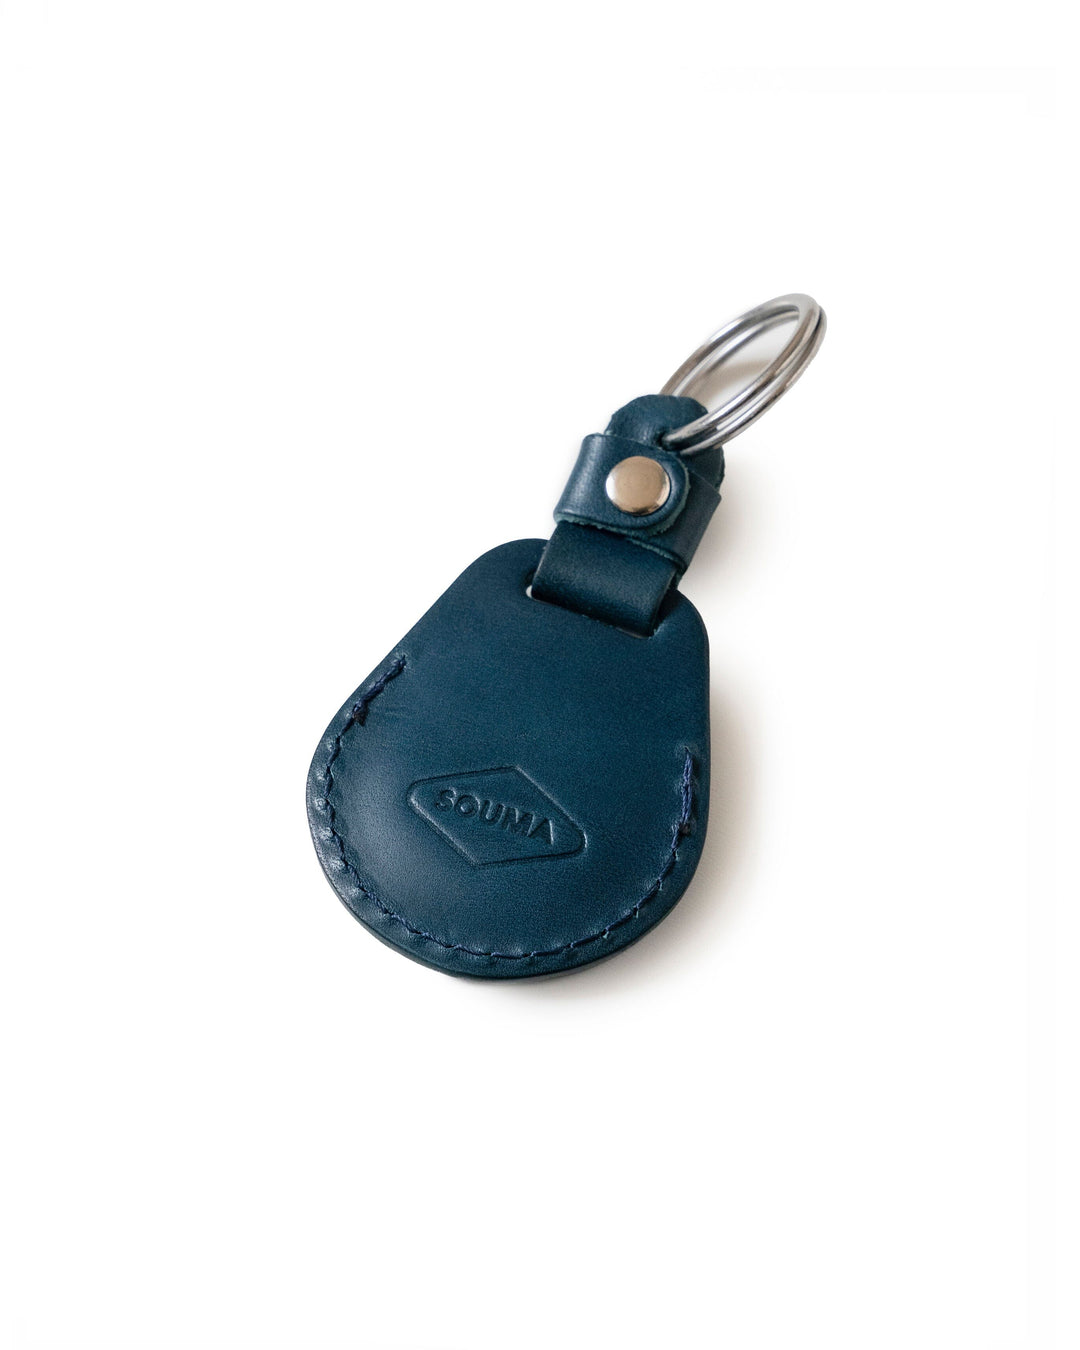 Apple AirTag Leather Keychain Souma Leather 